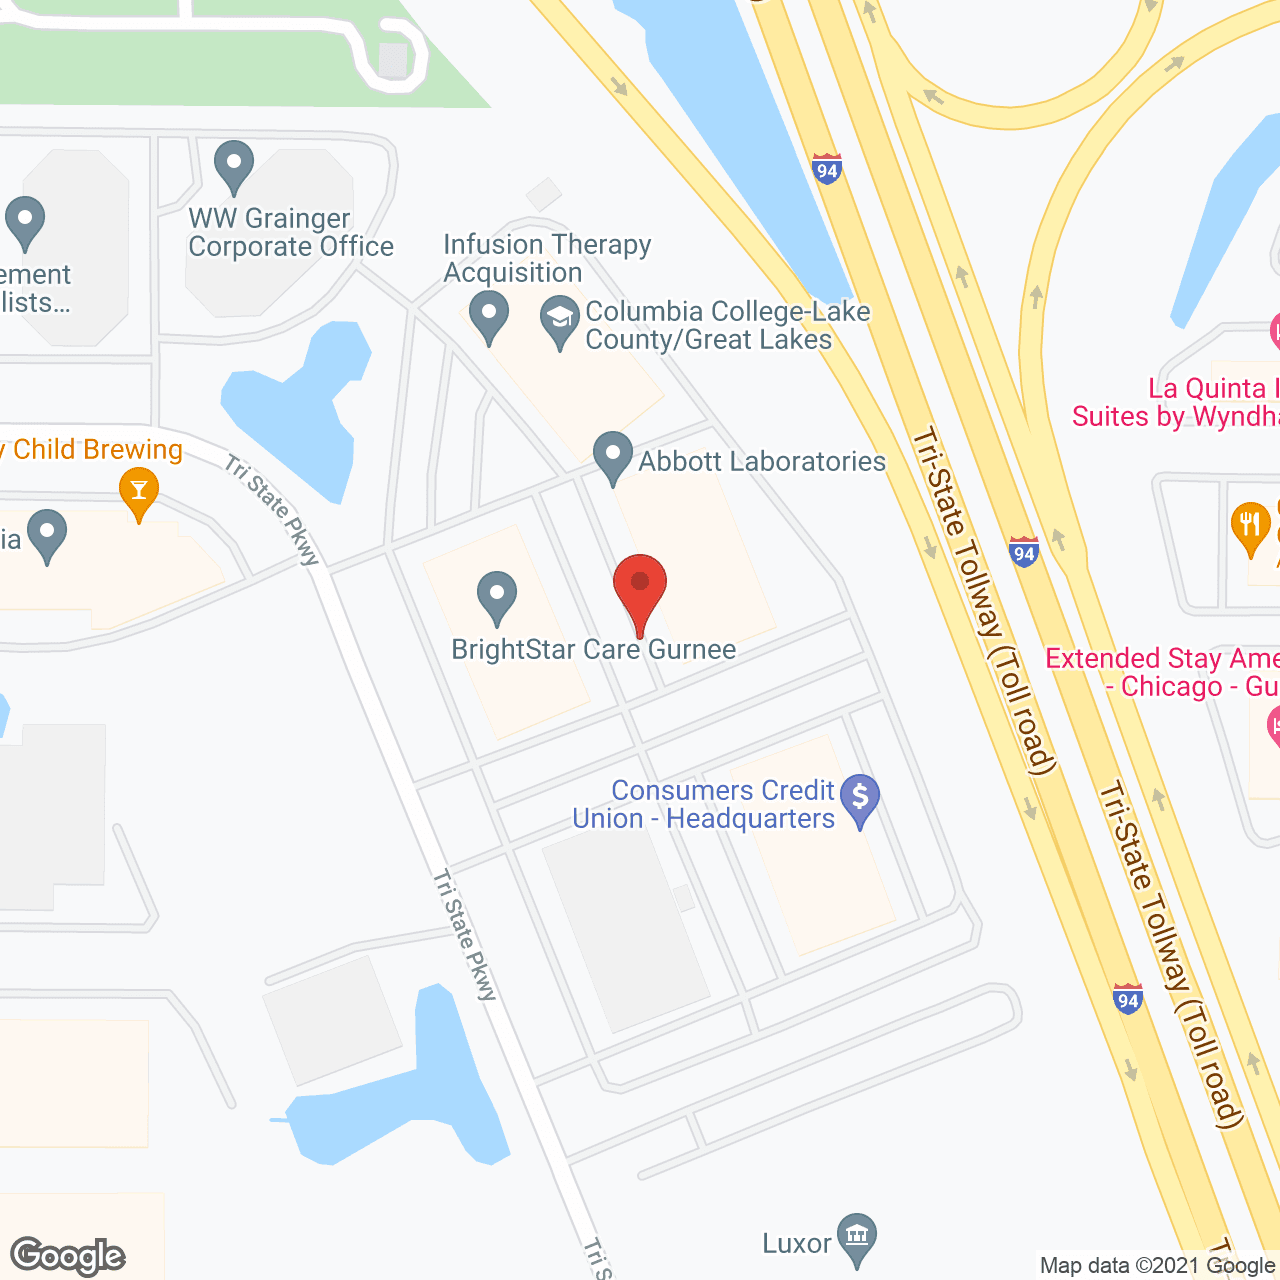 BrightStar Care - Gurnee, IL in google map